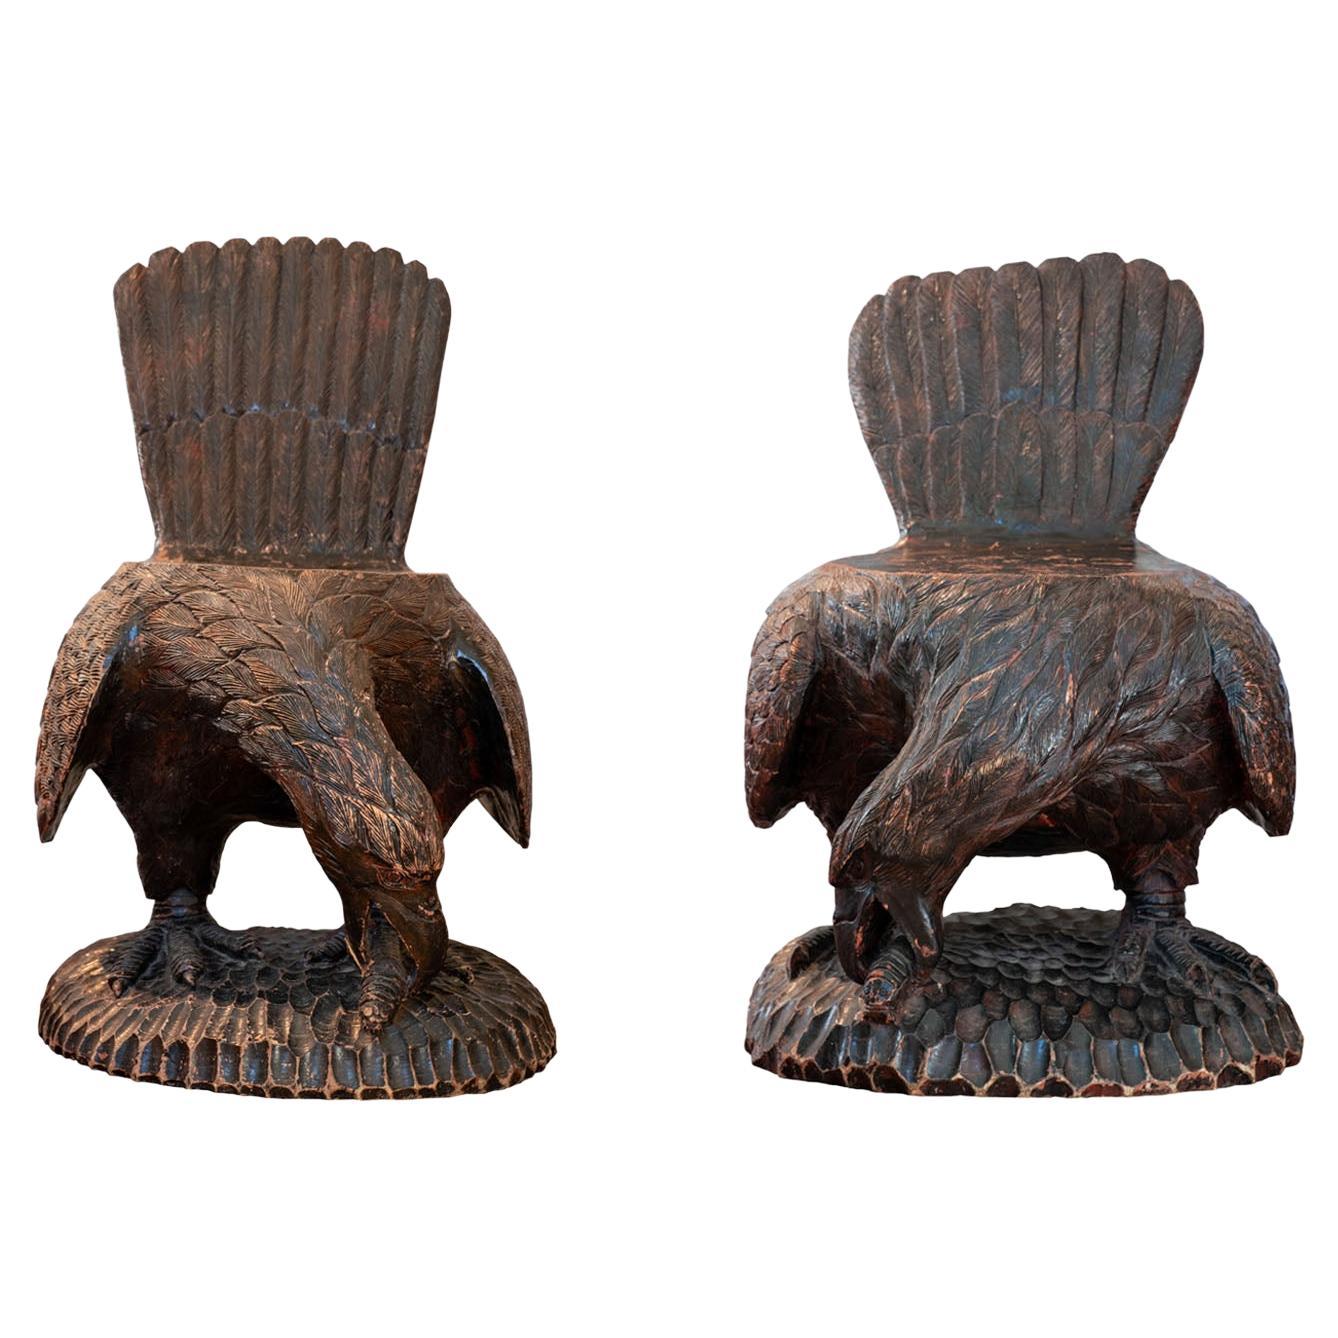 Paar venezianische geschnitzte Adlerstühle oder Bänke aus dem 18. Jahrhundert